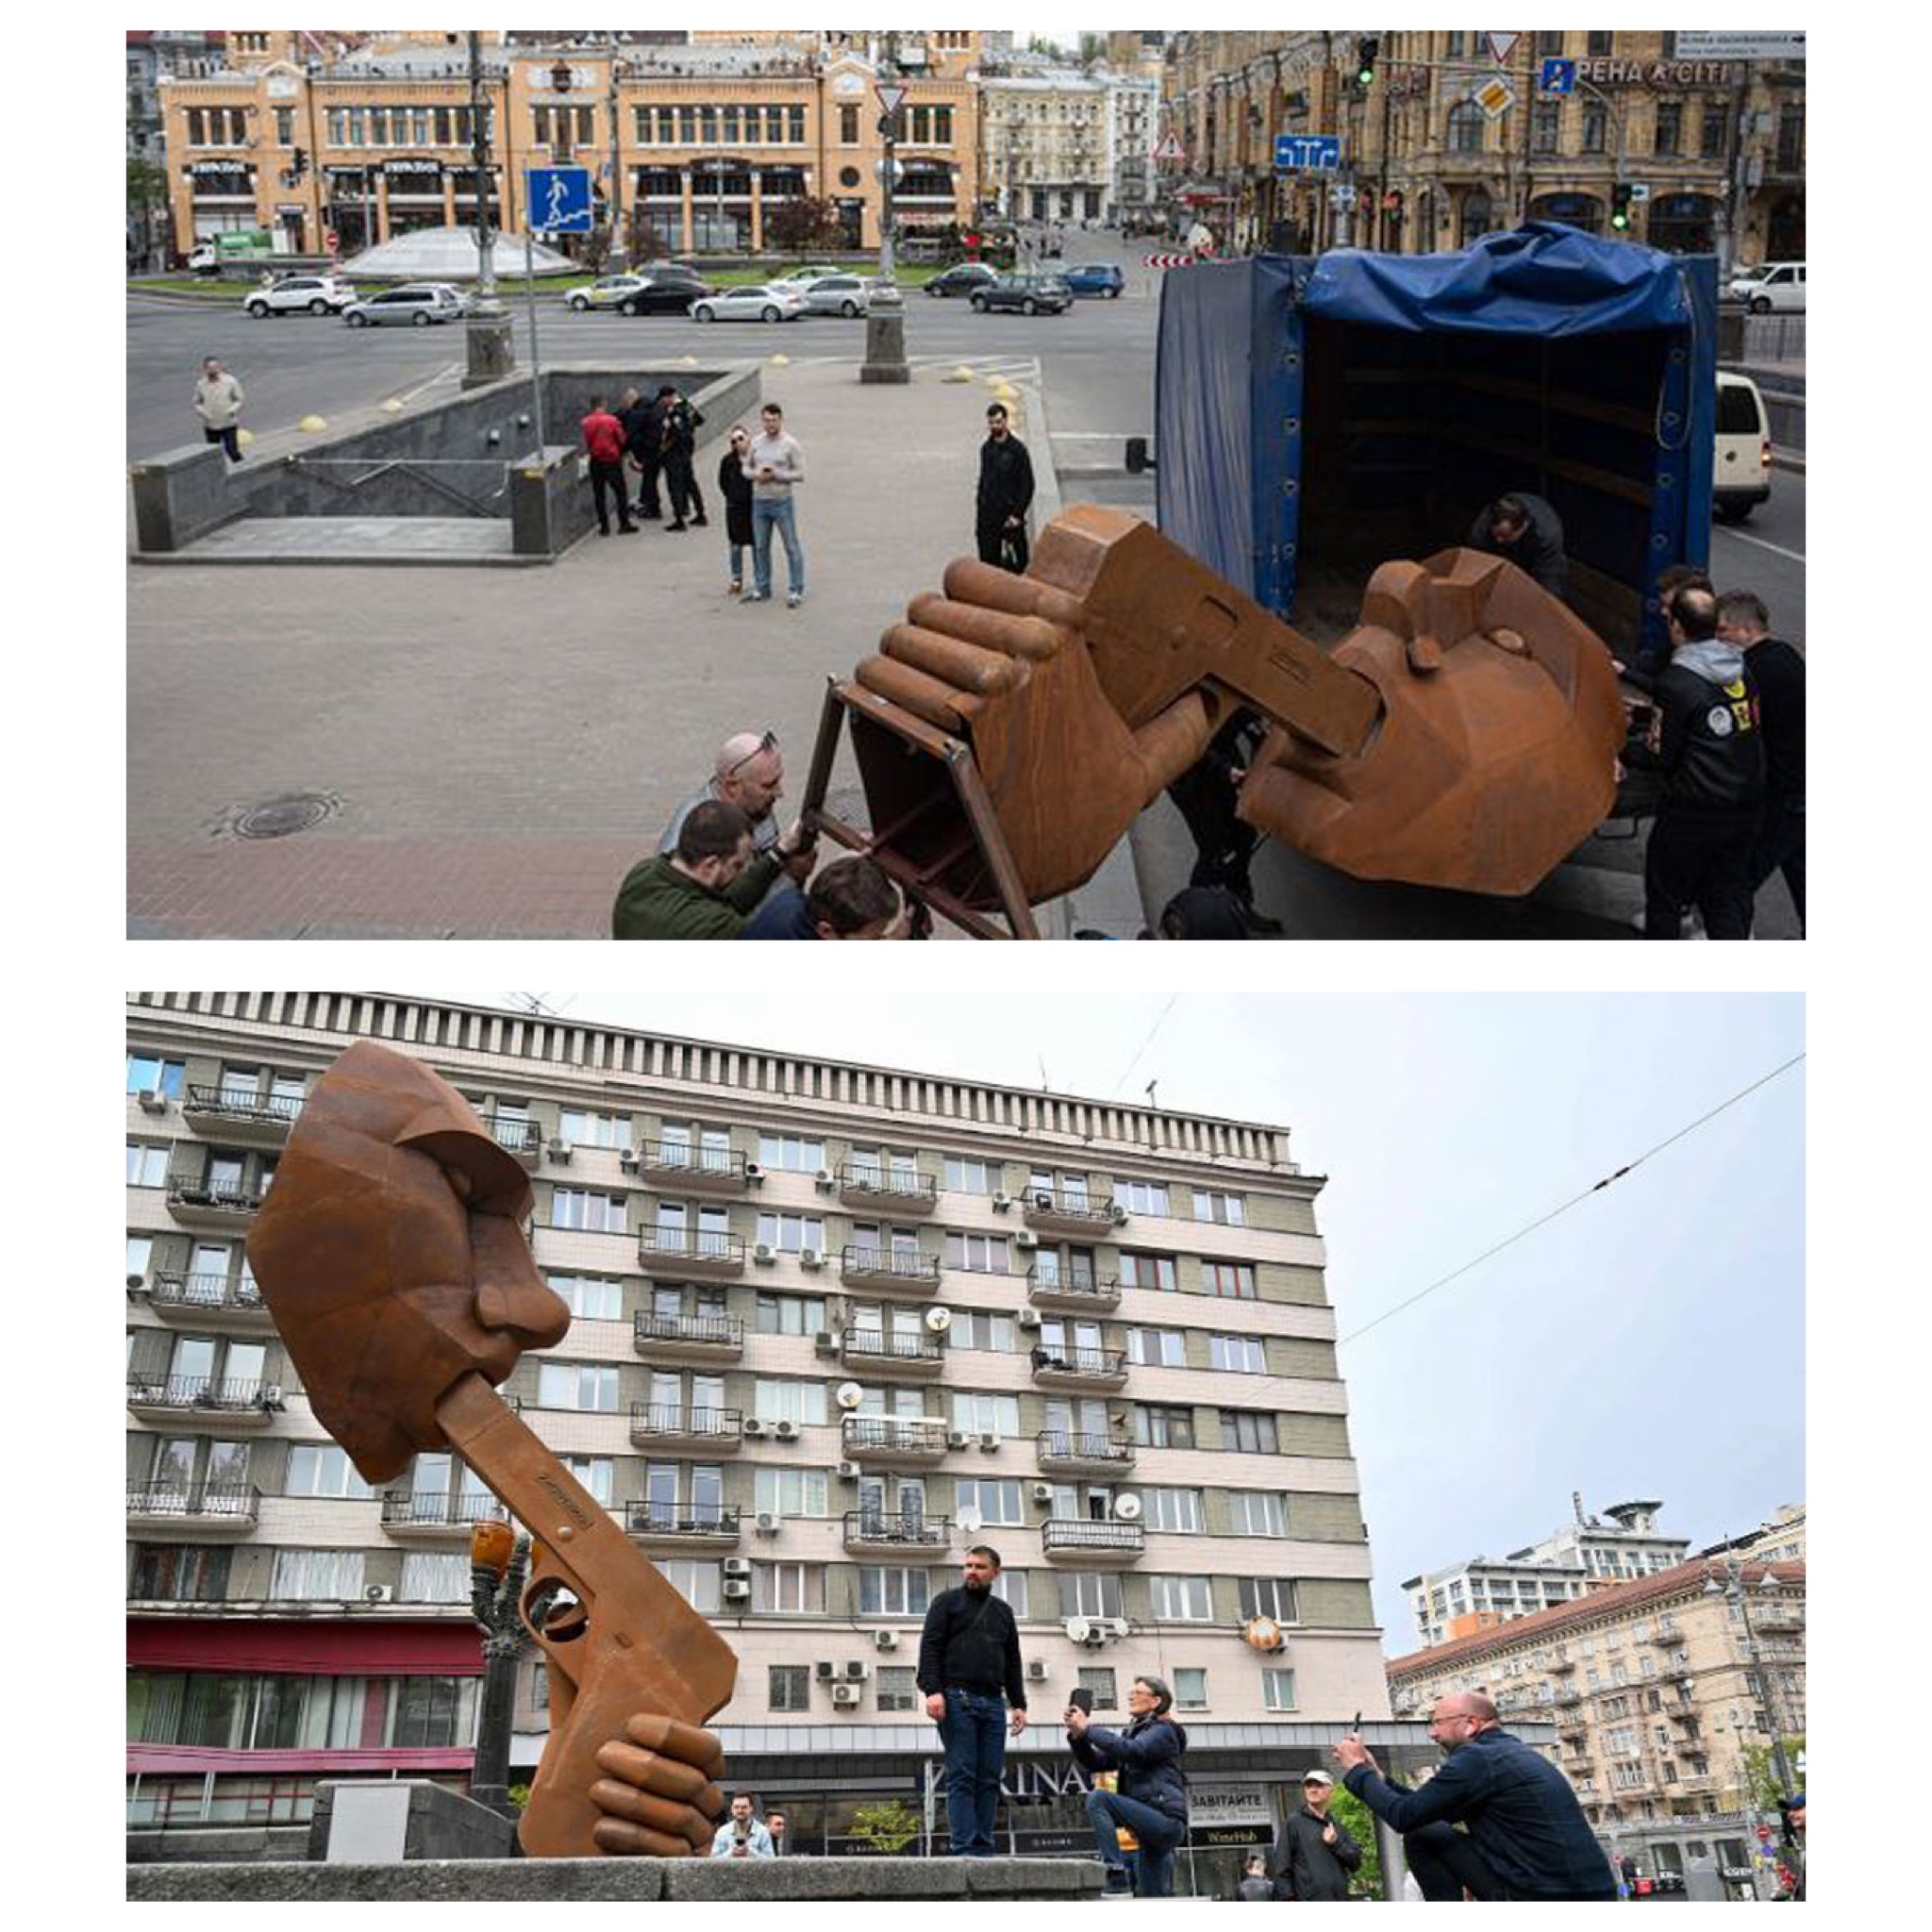 نصب مجسمه ولادیمیر پوتین در حال خودکشی!(عكس)